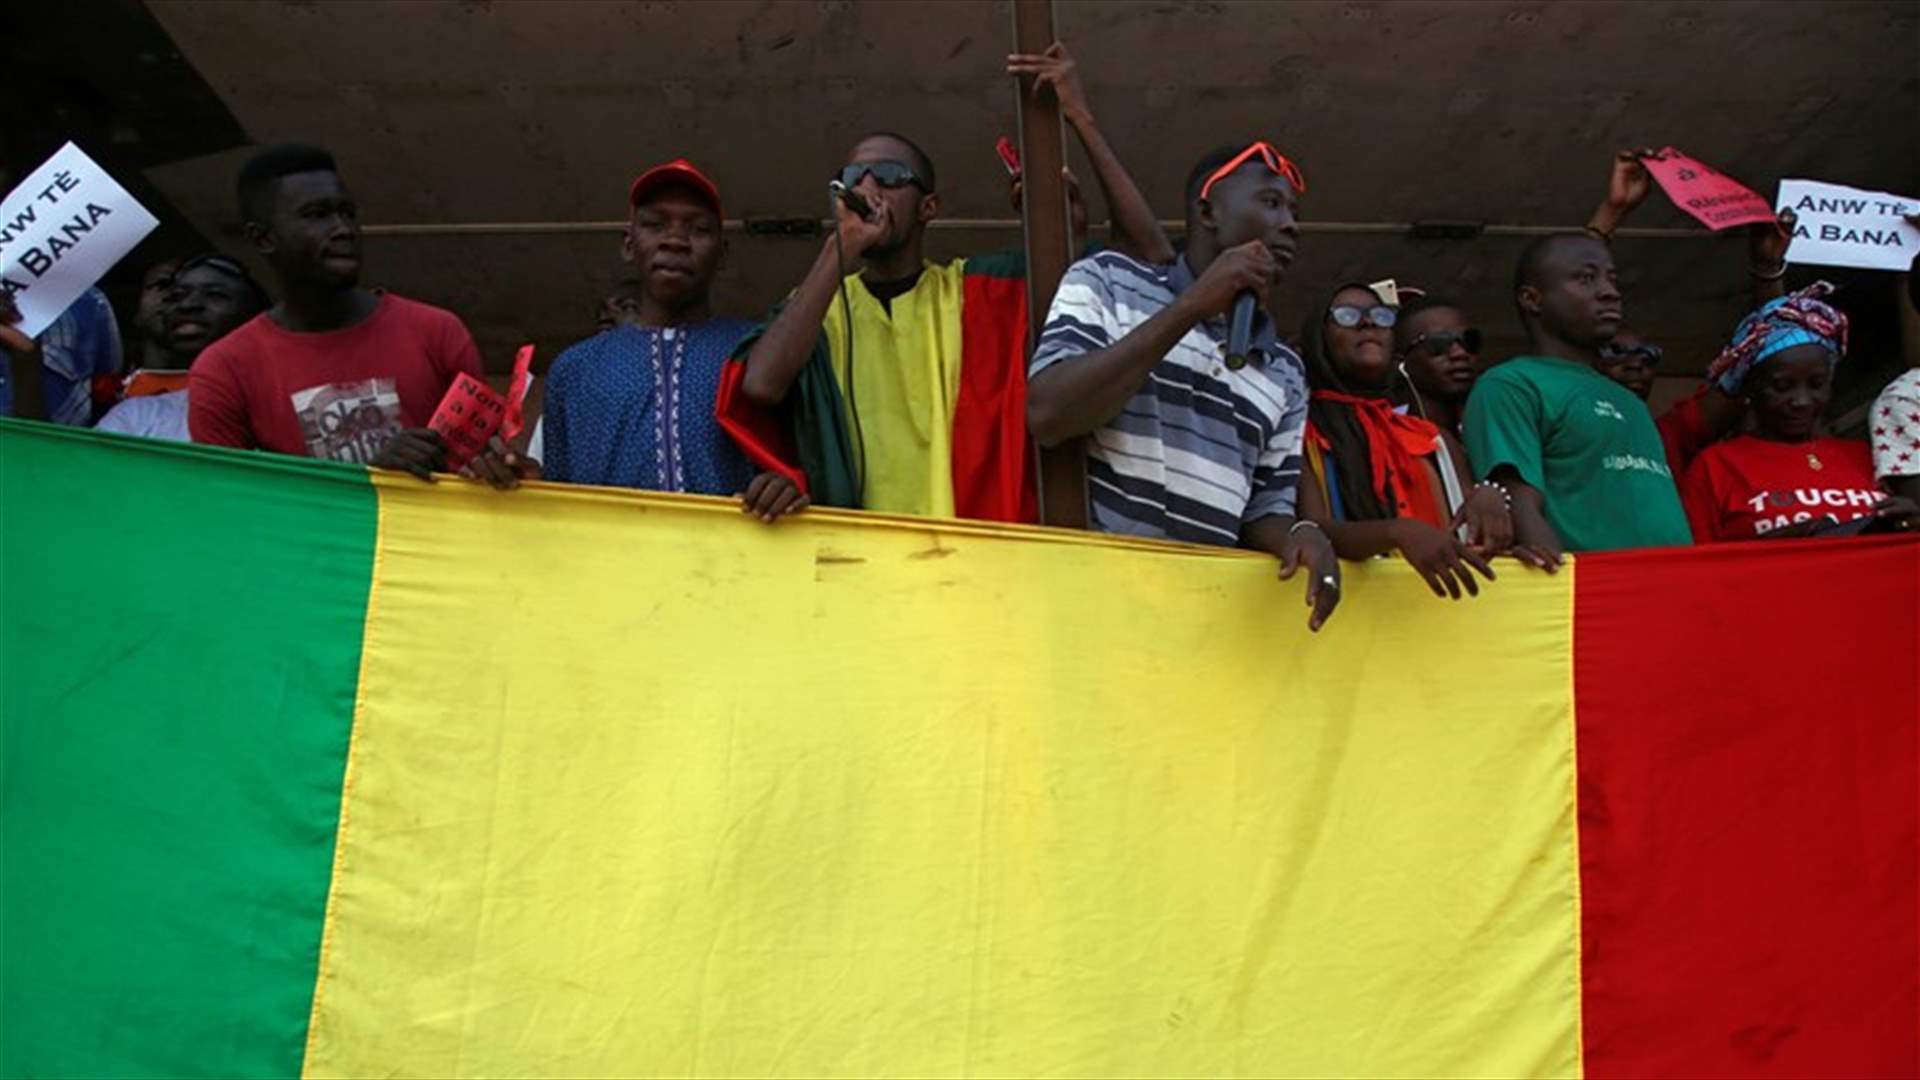 المجلس العسكري الحاكم في مالي يقول إنّه أحبط محاولة انقلابية